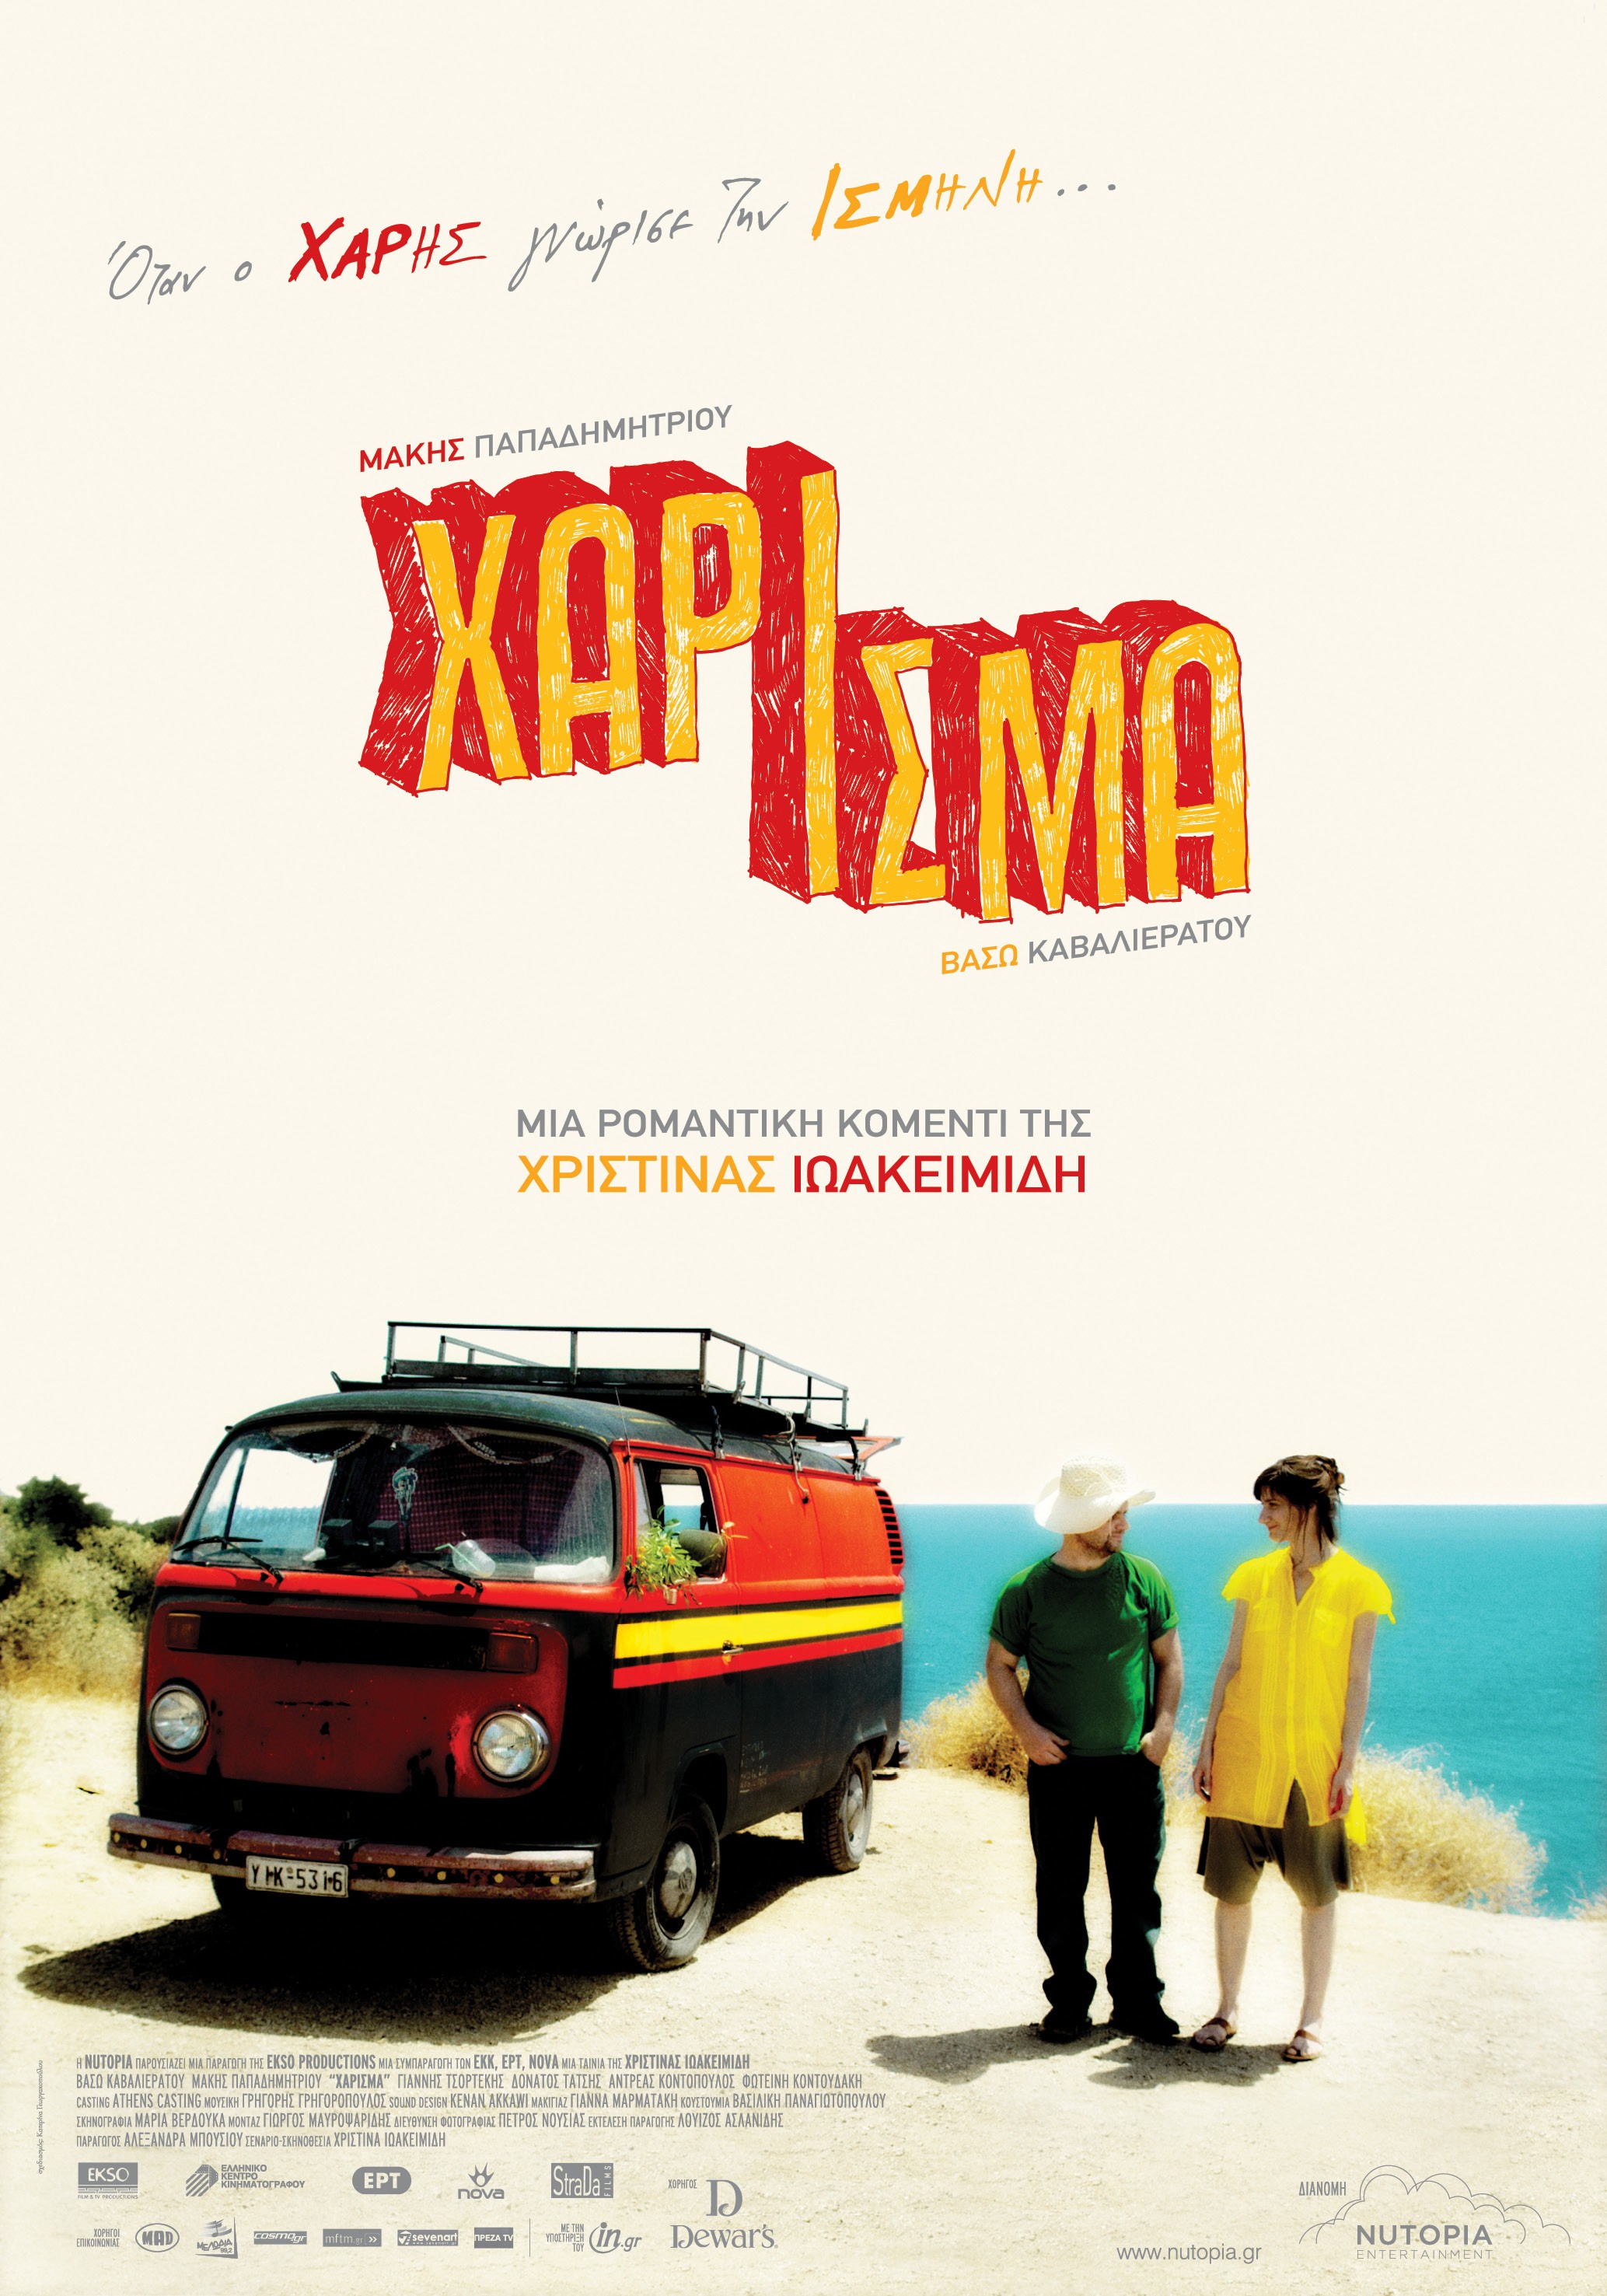 Mega Sized Movie Poster Image for Xarisma 